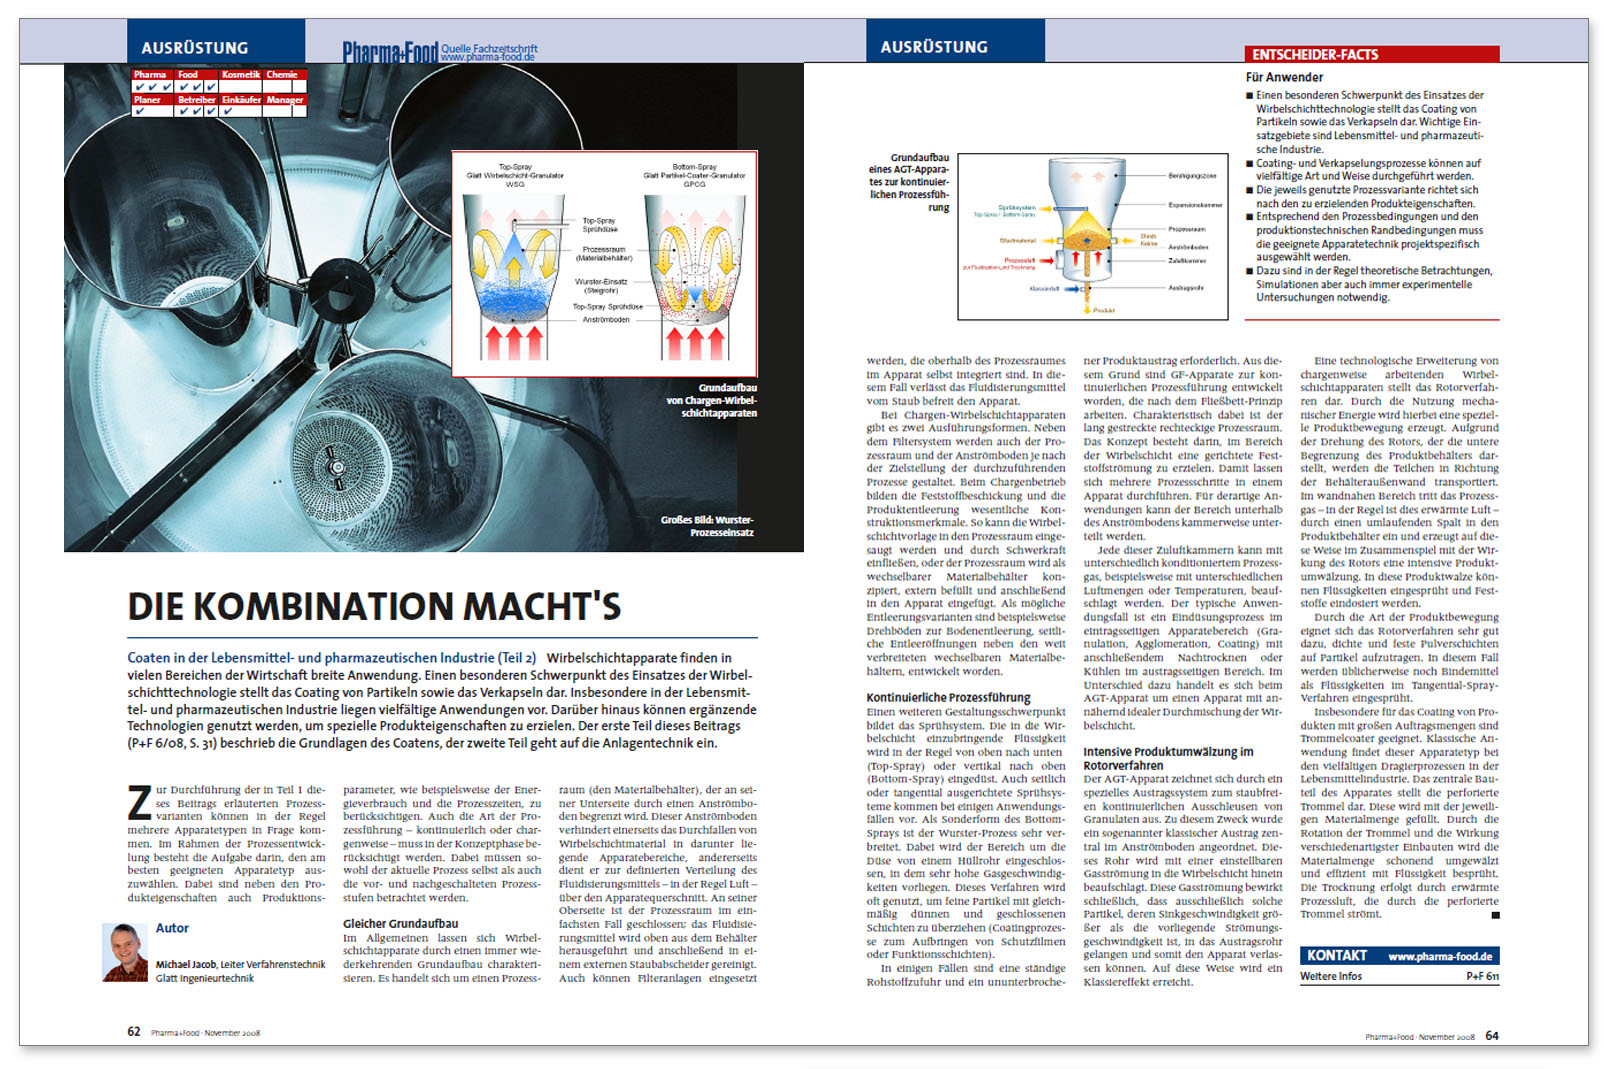 Glatt technical article on 'Coaten in der Lebensmittel- und pharmazeutischen Industrie, Teil 2', published in the trade magazine 'Pharma+Food', issue 07/2008, Hüthig GmbH